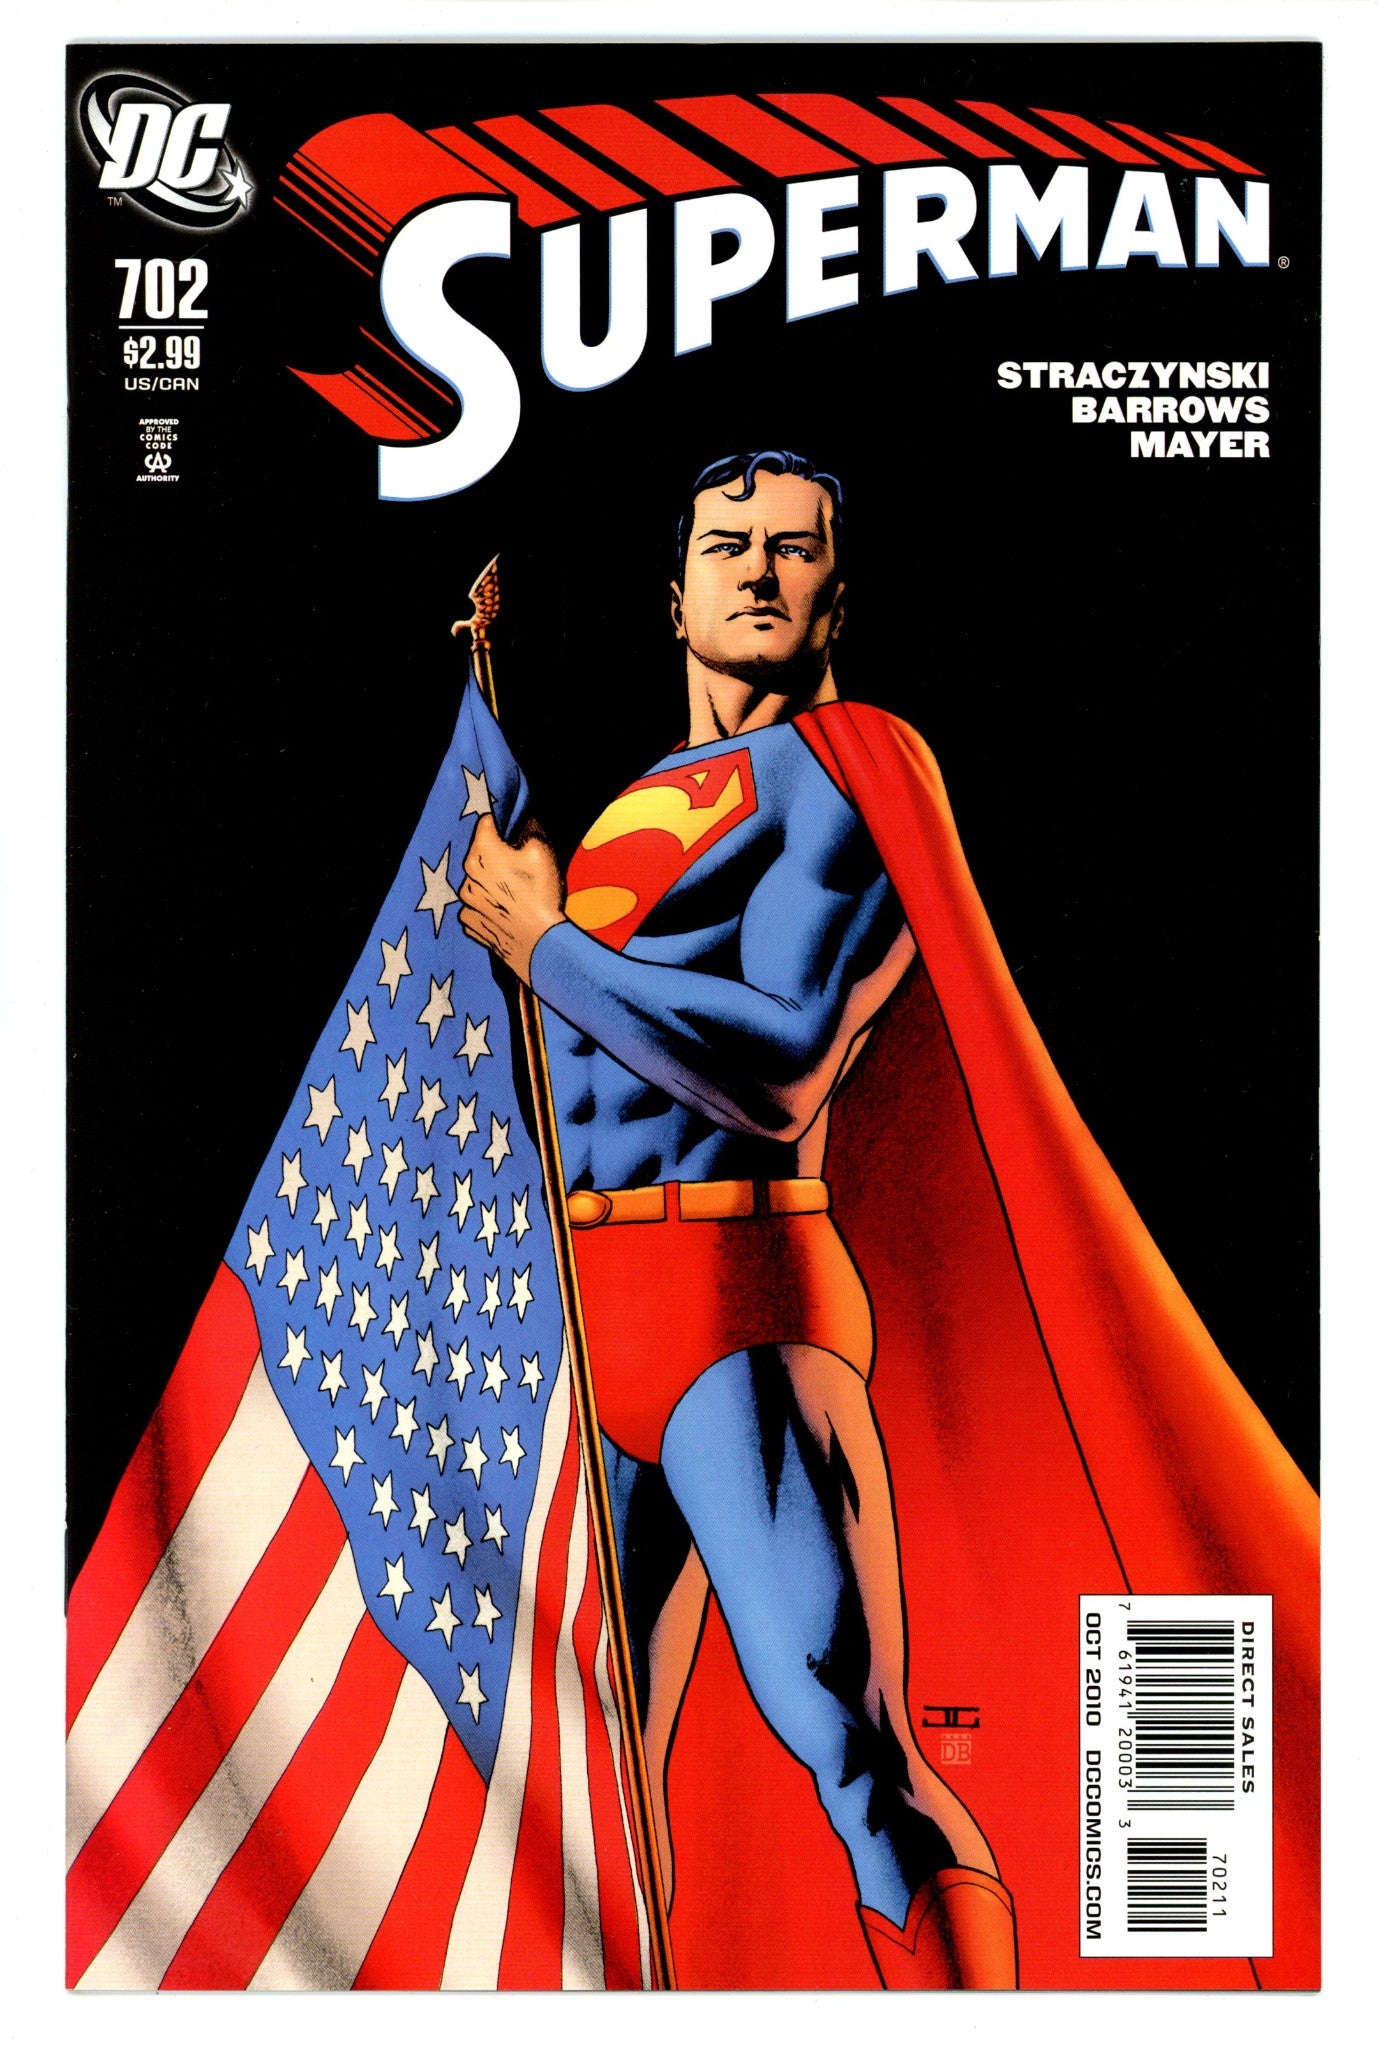 Superman Vol 1 702 High Grade (2010) 